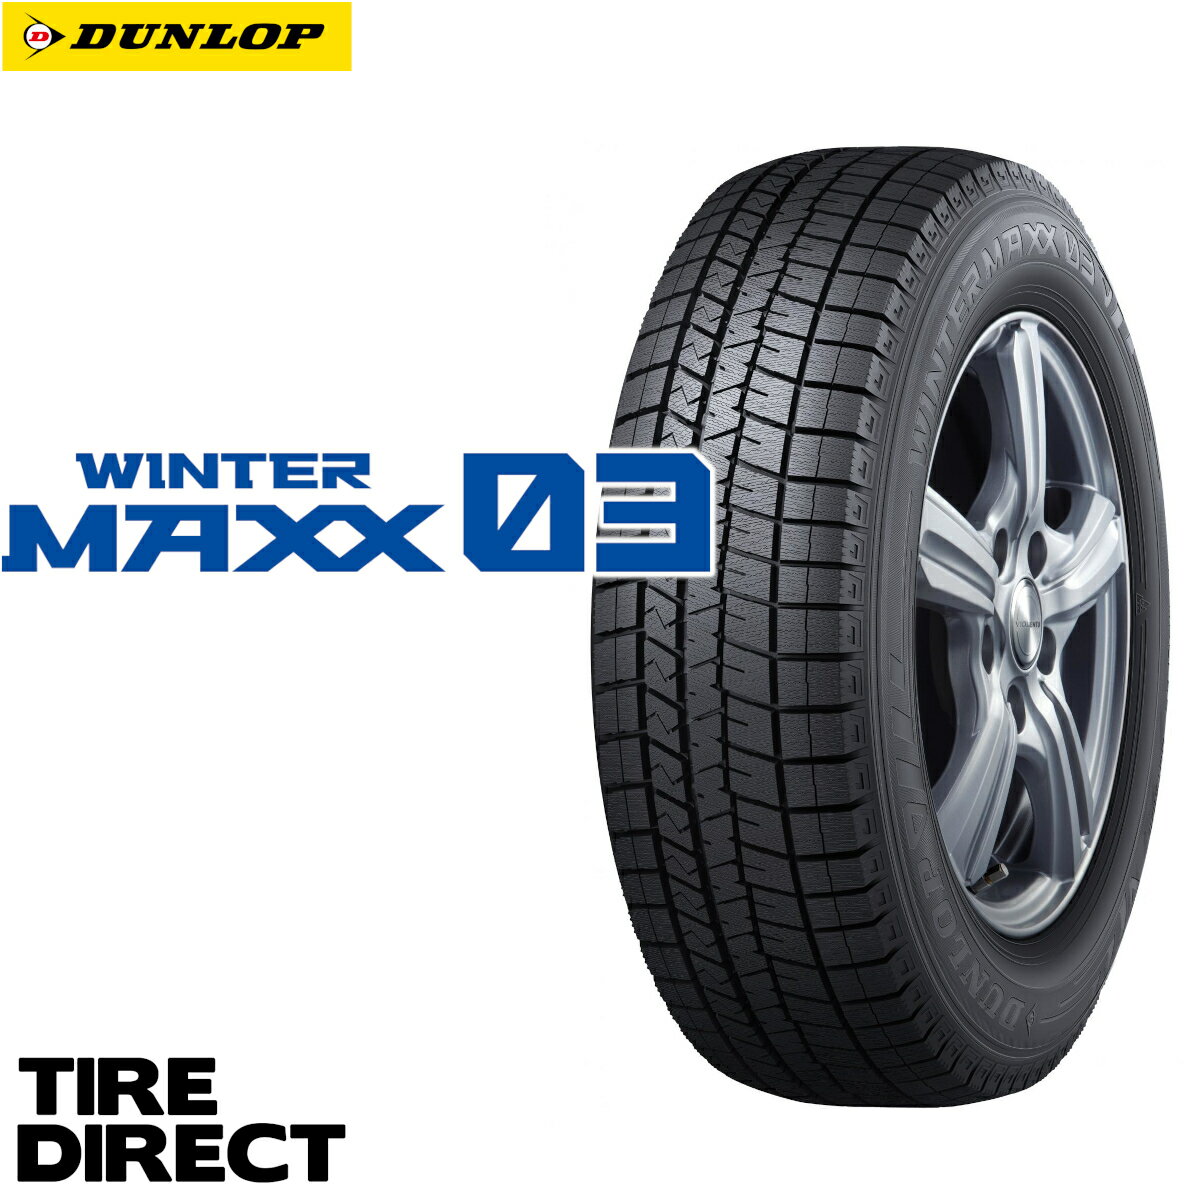 新品 ダンロップ ウインターマックス WM03 255/45R18 99Q DUNLOP WINTER MAXX ウィンターマックス 255/45-18 冬タイヤ スタッドレスタイヤ